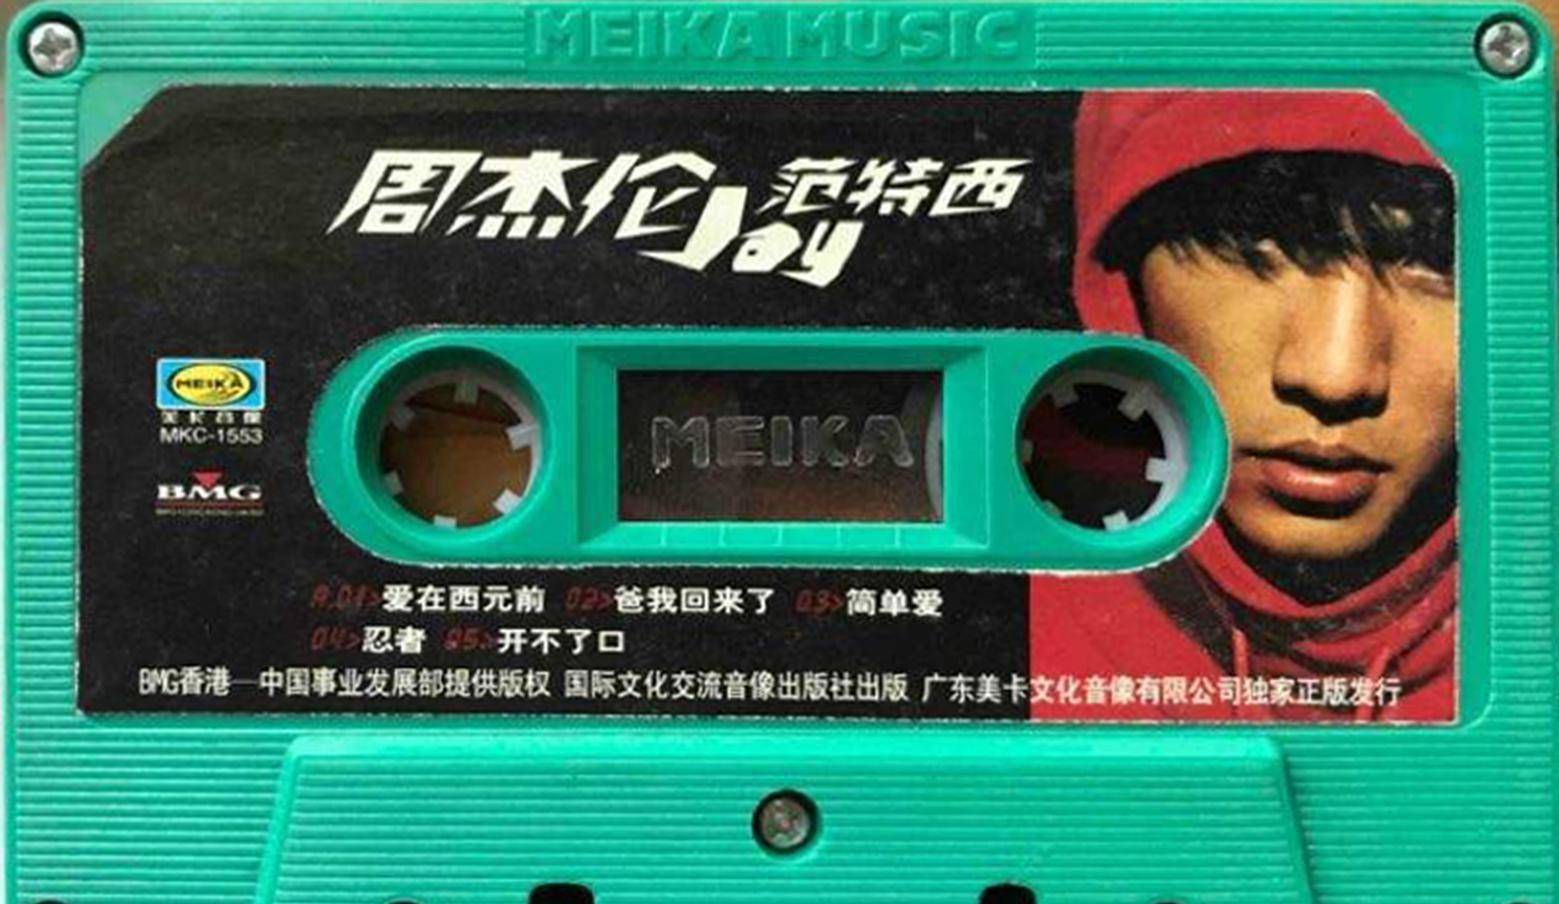 点评周杰伦专辑《范特西》，永远改变华语乐坛的专辑